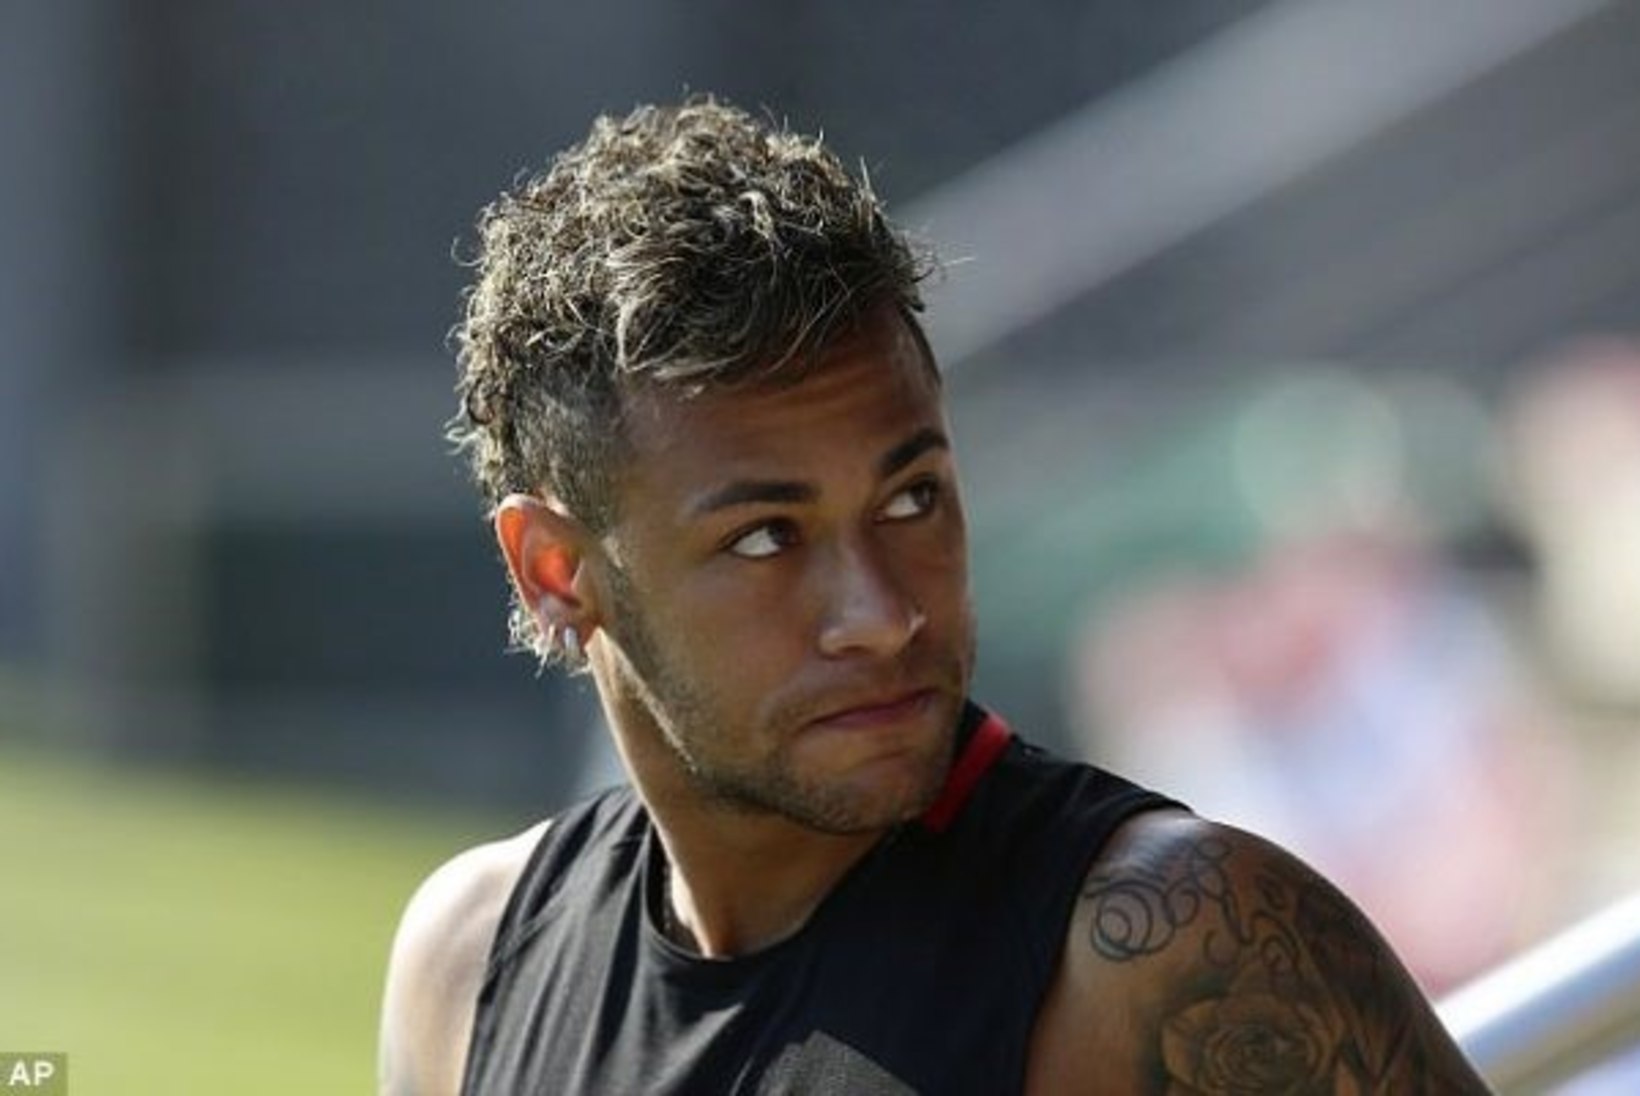 NII SEE JUHTUS | Sport 3.08: Neymari esindajad ostsid mehe lepingust vabaks